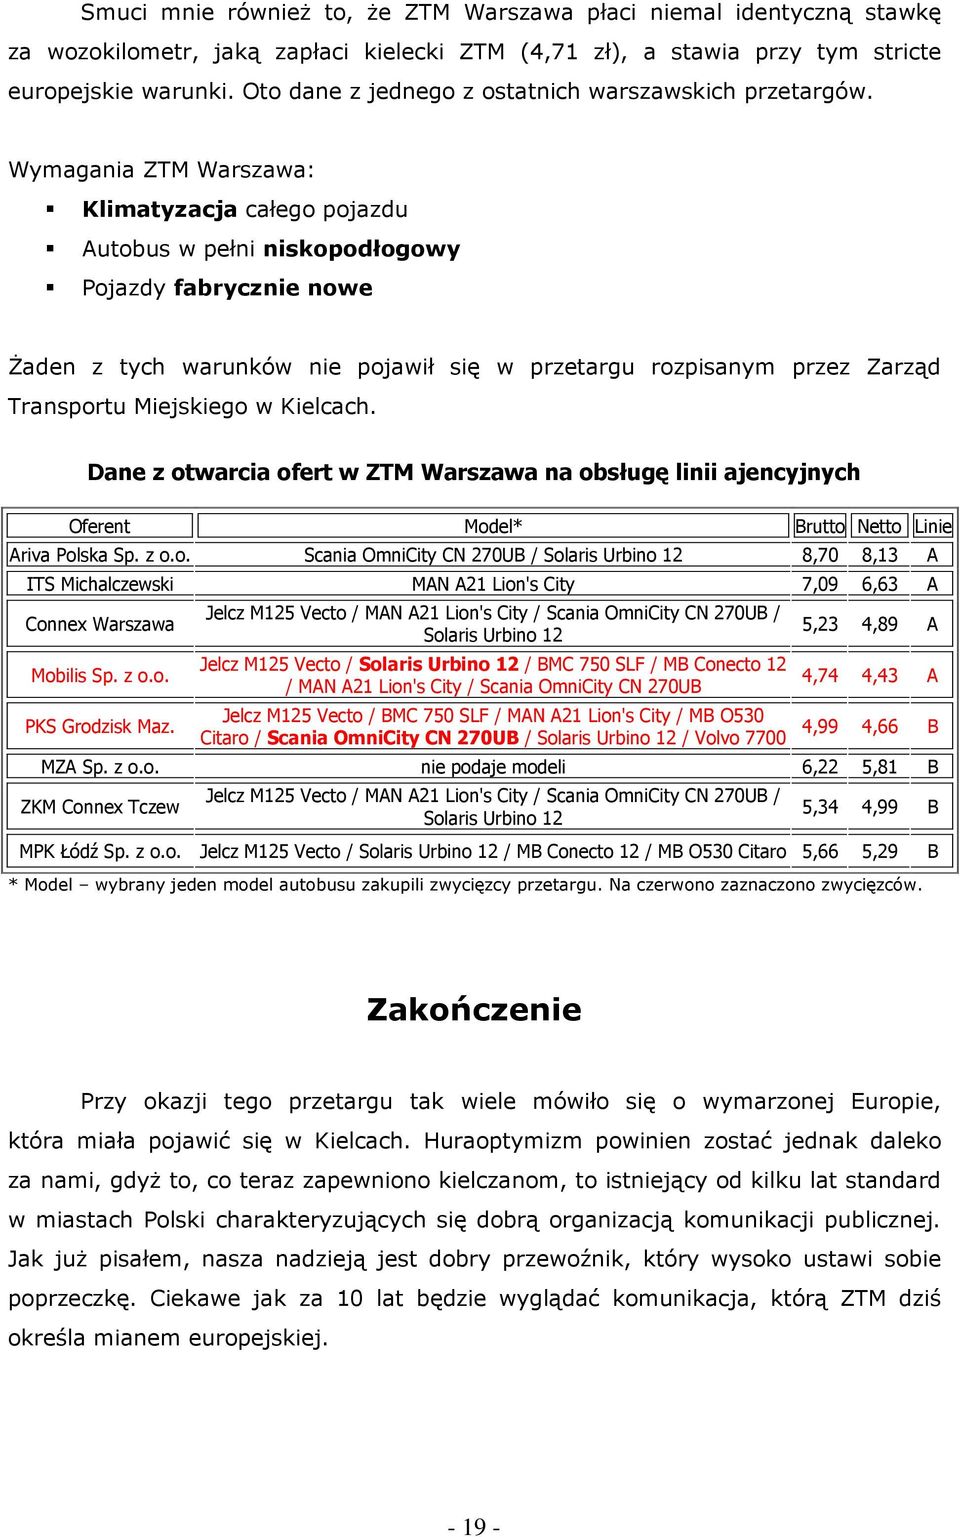 Wymagania ZTM Warszawa: Klimatyzacja całego pojazdu Autobus w pełni niskopodłogowy Pojazdy fabrycznie nowe śaden z tych warunków nie pojawił się w przetargu rozpisanym przez Zarząd Transportu